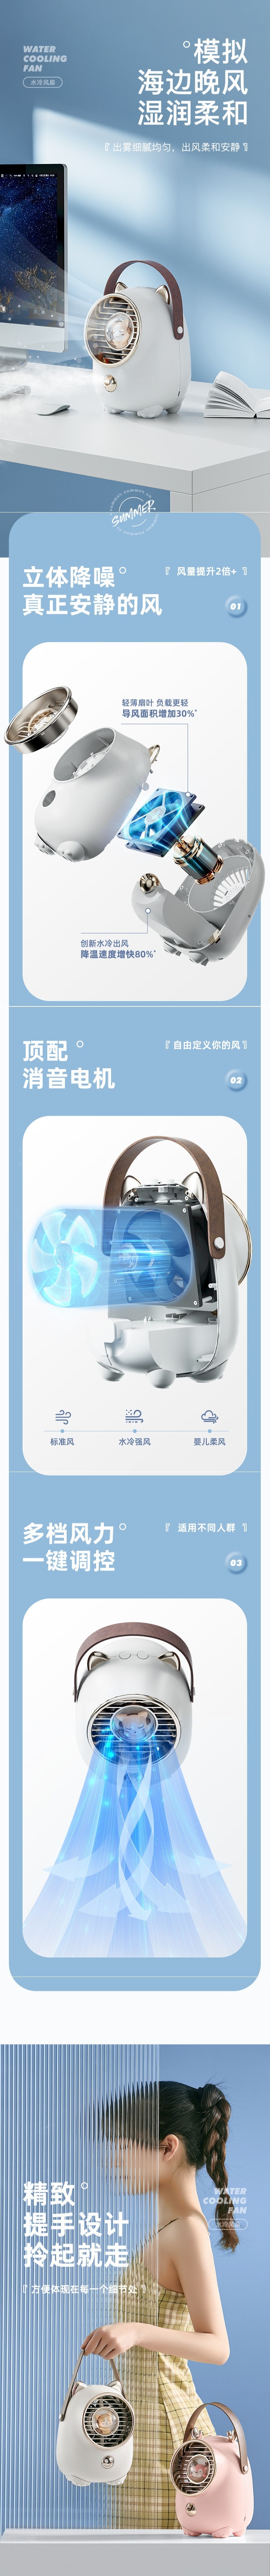 【中国直邮】水冷小风扇 空气循环式空调扇 桌面喷雾风扇 USB充电 白色